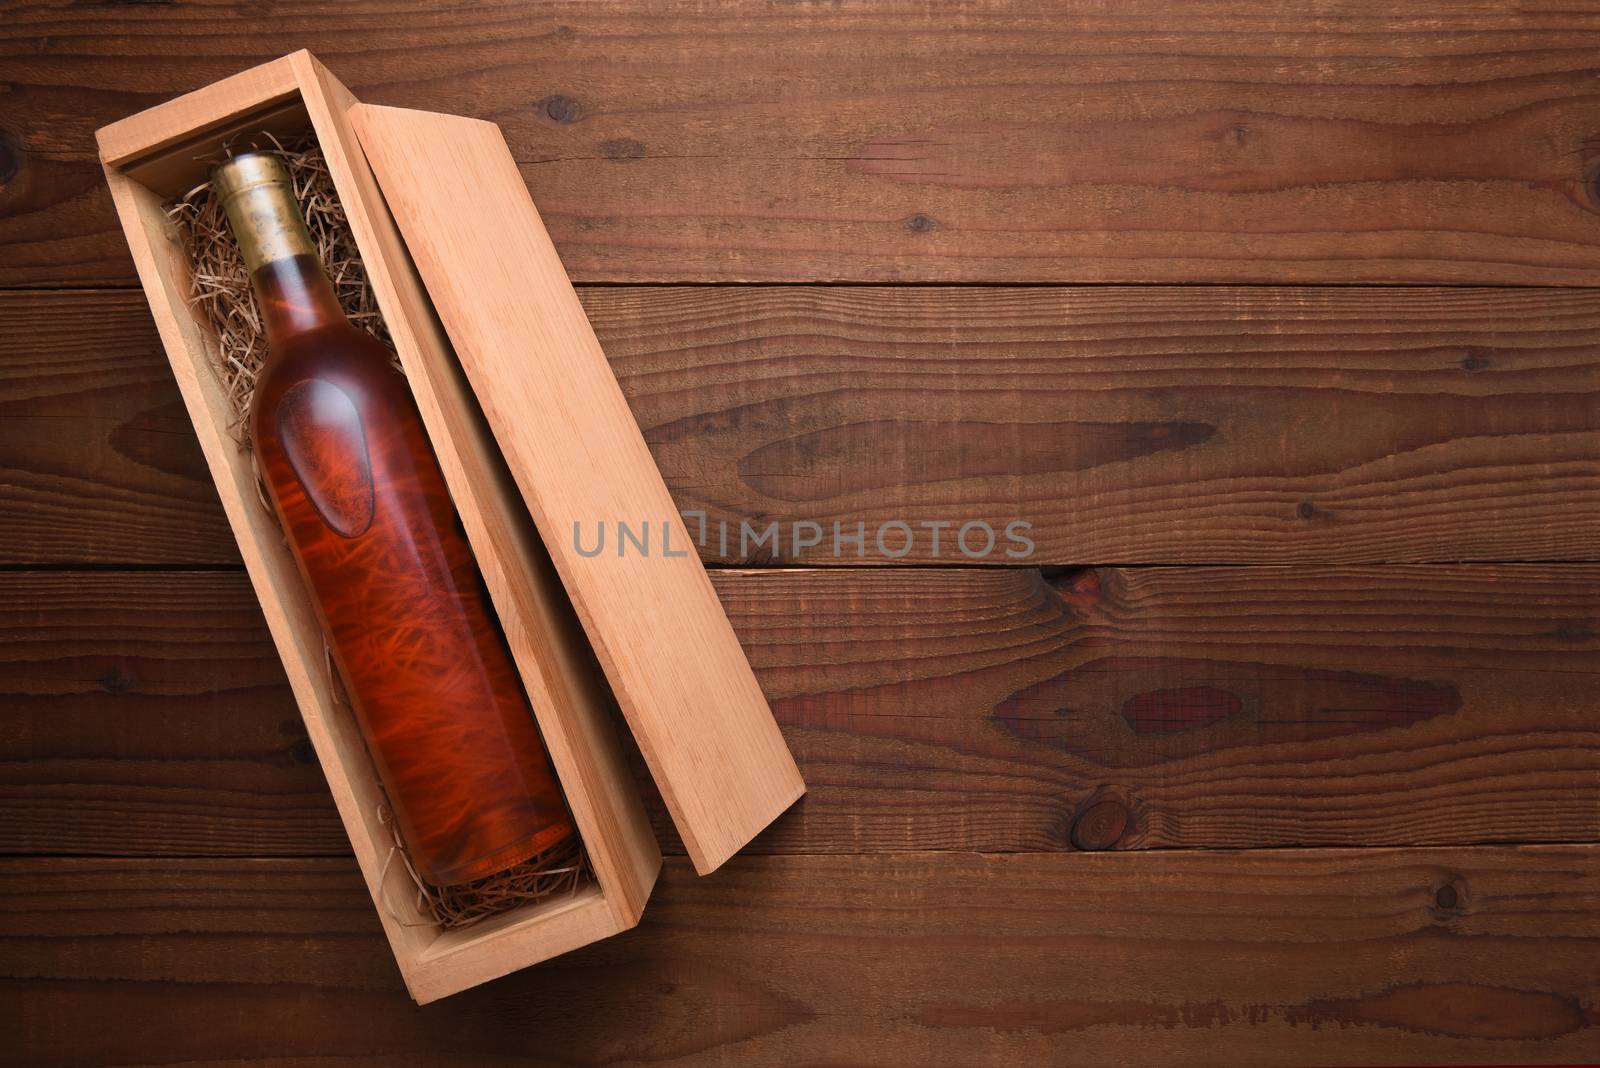 A single Bottle of Blush wine in its wooden case by sCukrov